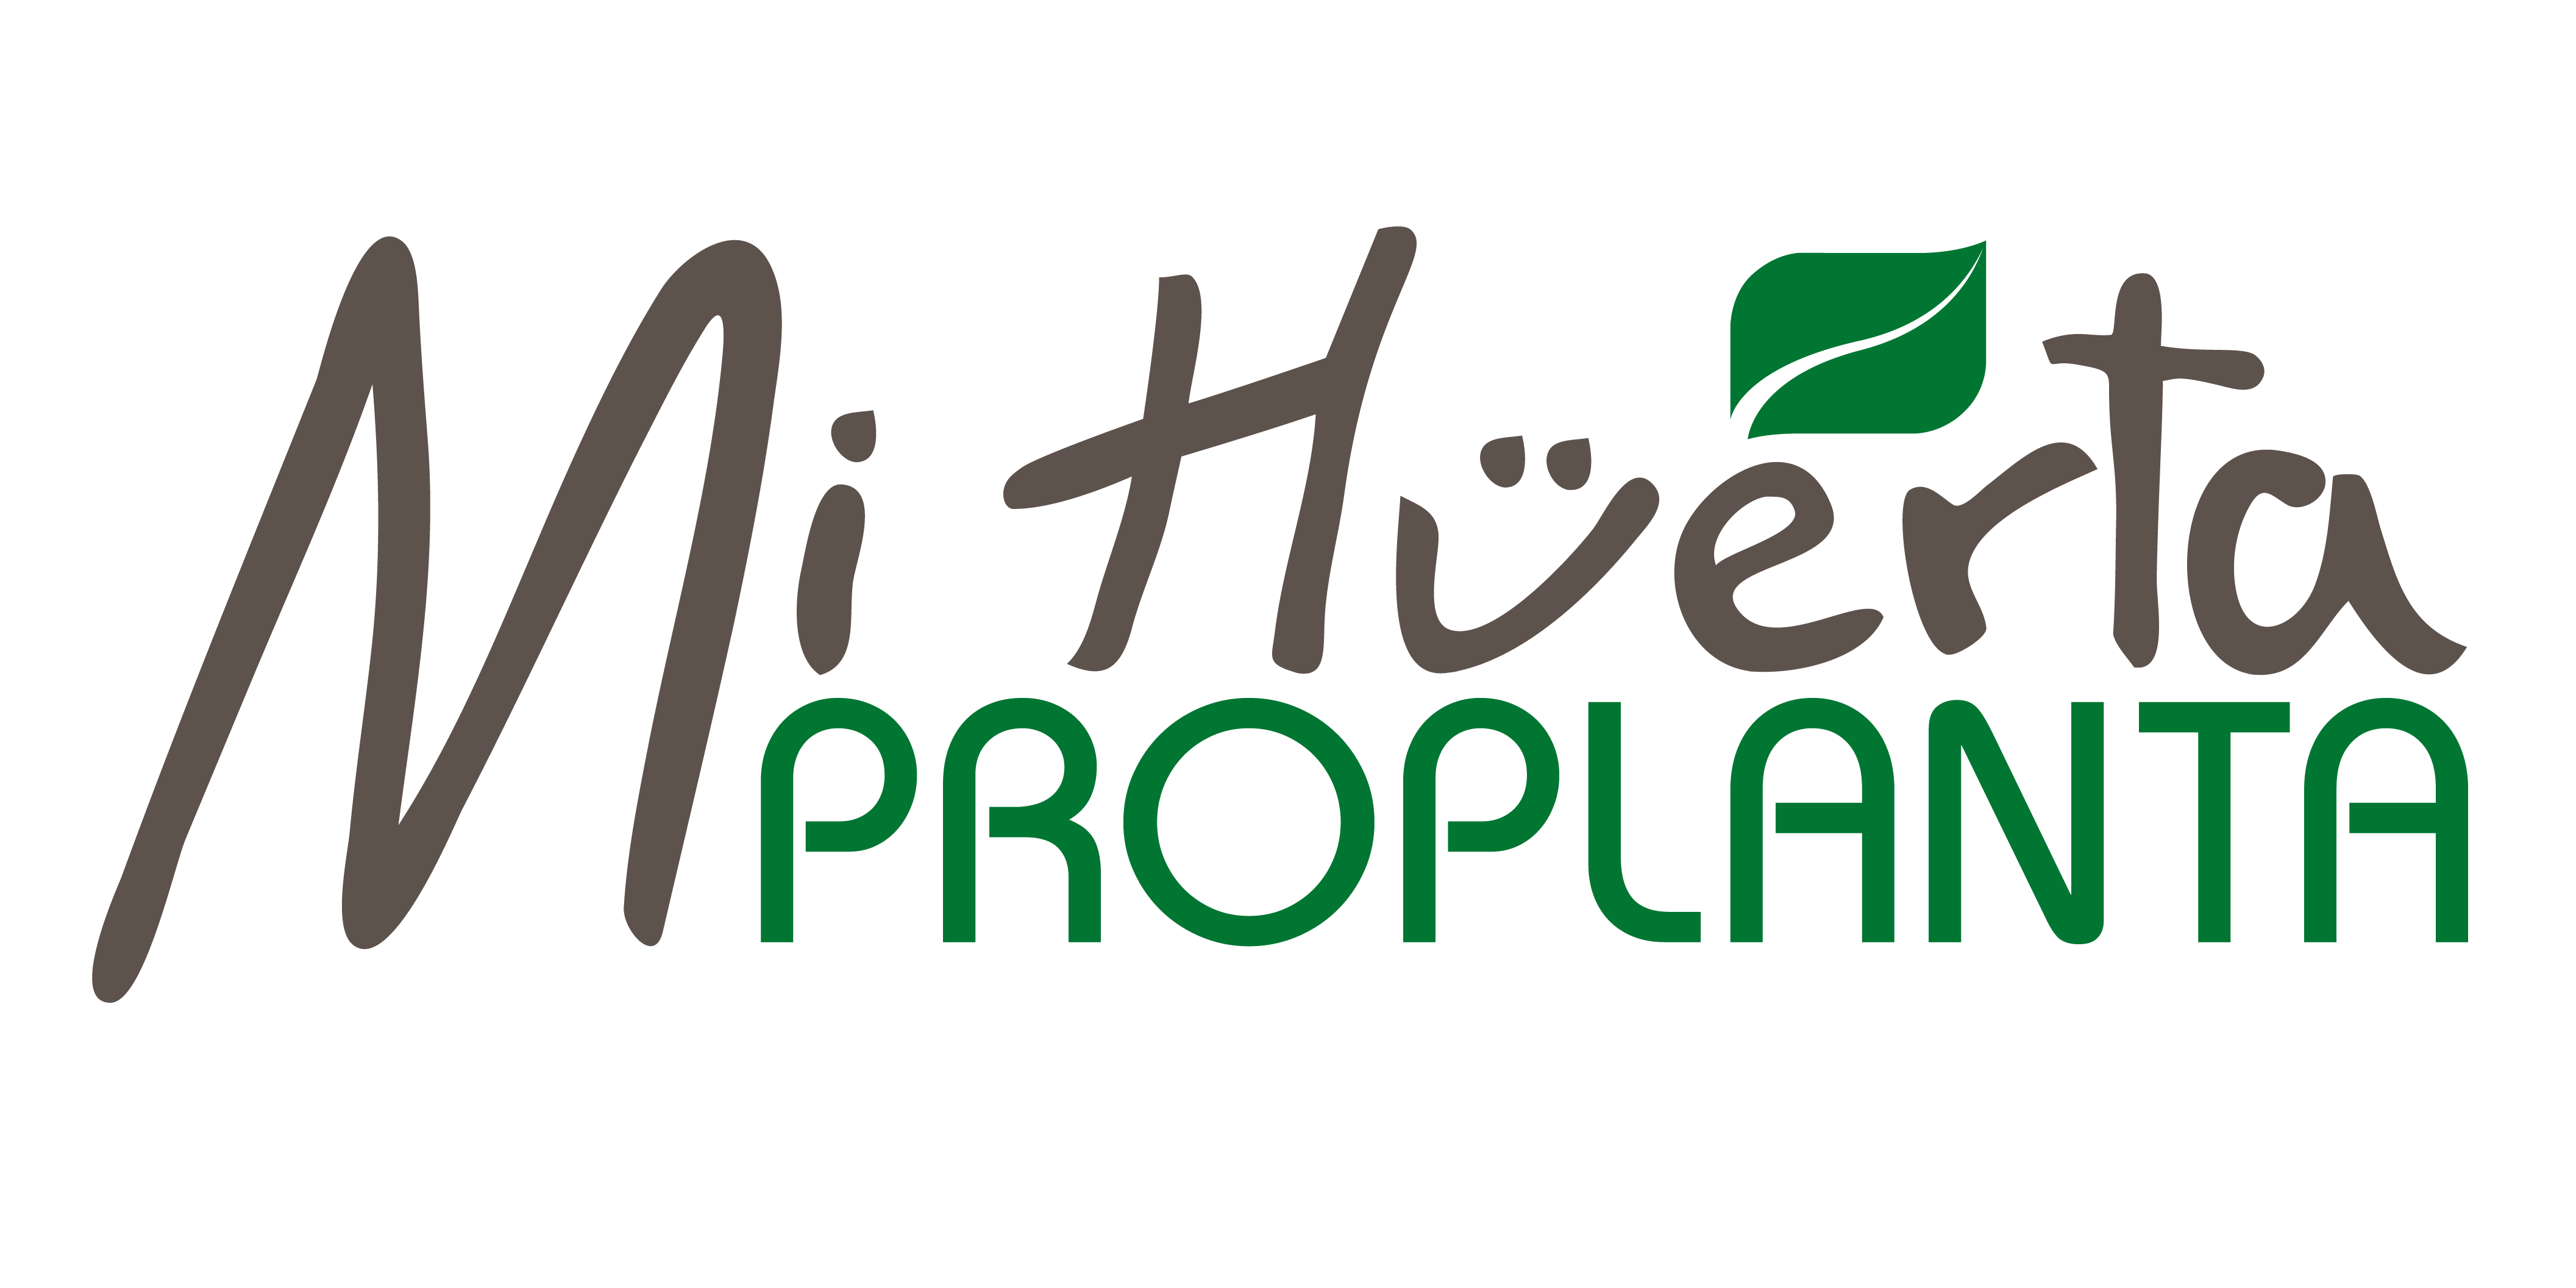 MiHuerta Proplanta